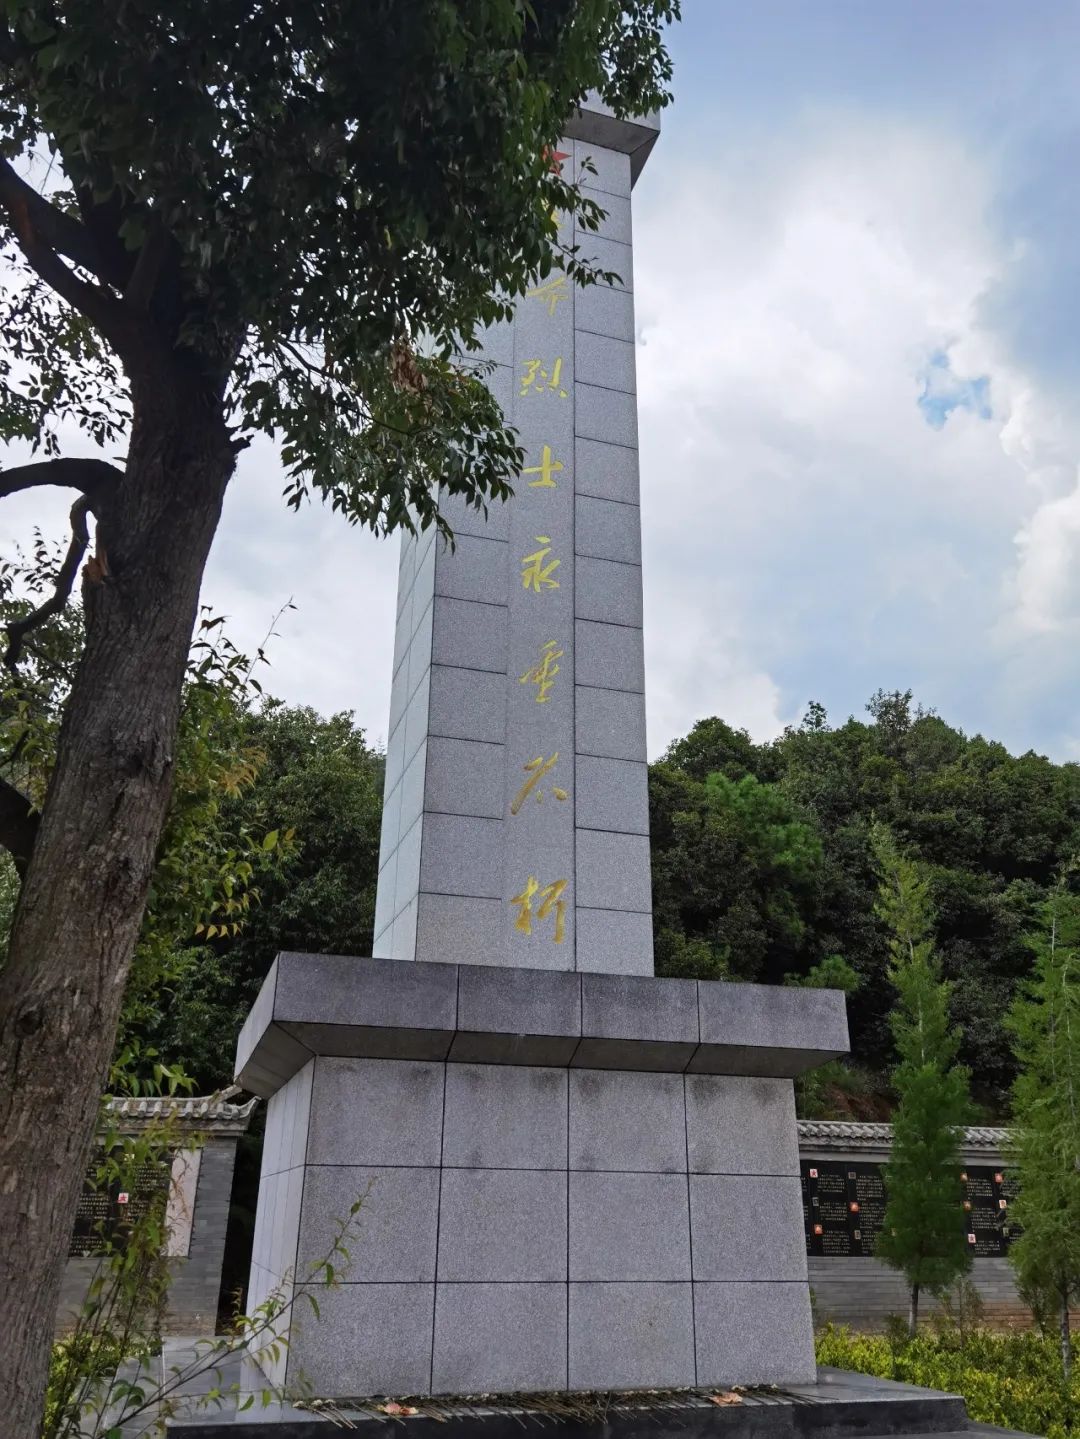 活动开始,党员们带着崇高的敬意来到长松山革命烈士陵园祭扫烈士墓